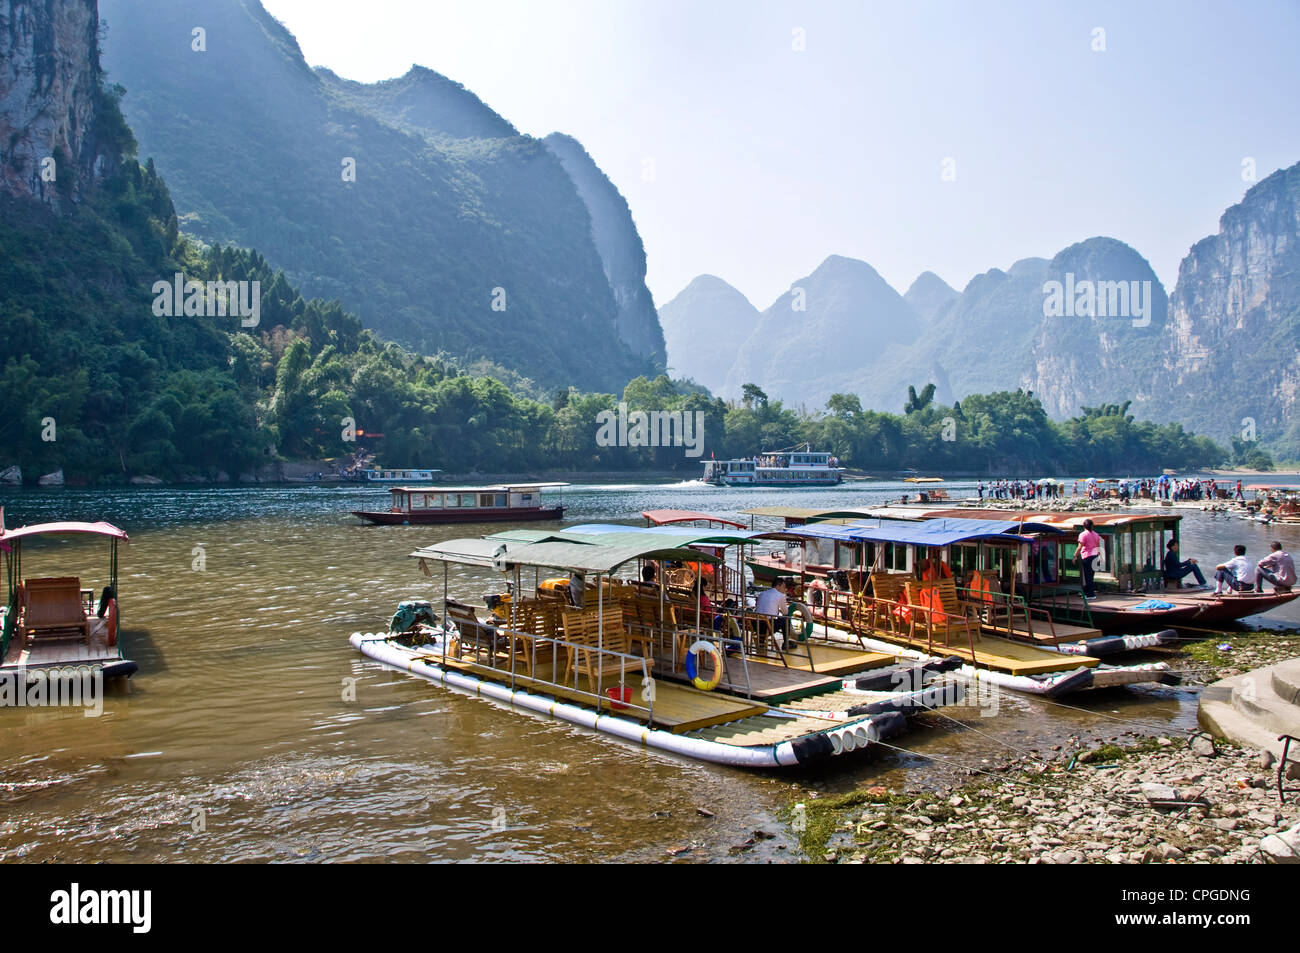 Li river between Guilin and  Yangshuo, Guangxi province - China Stock Photo